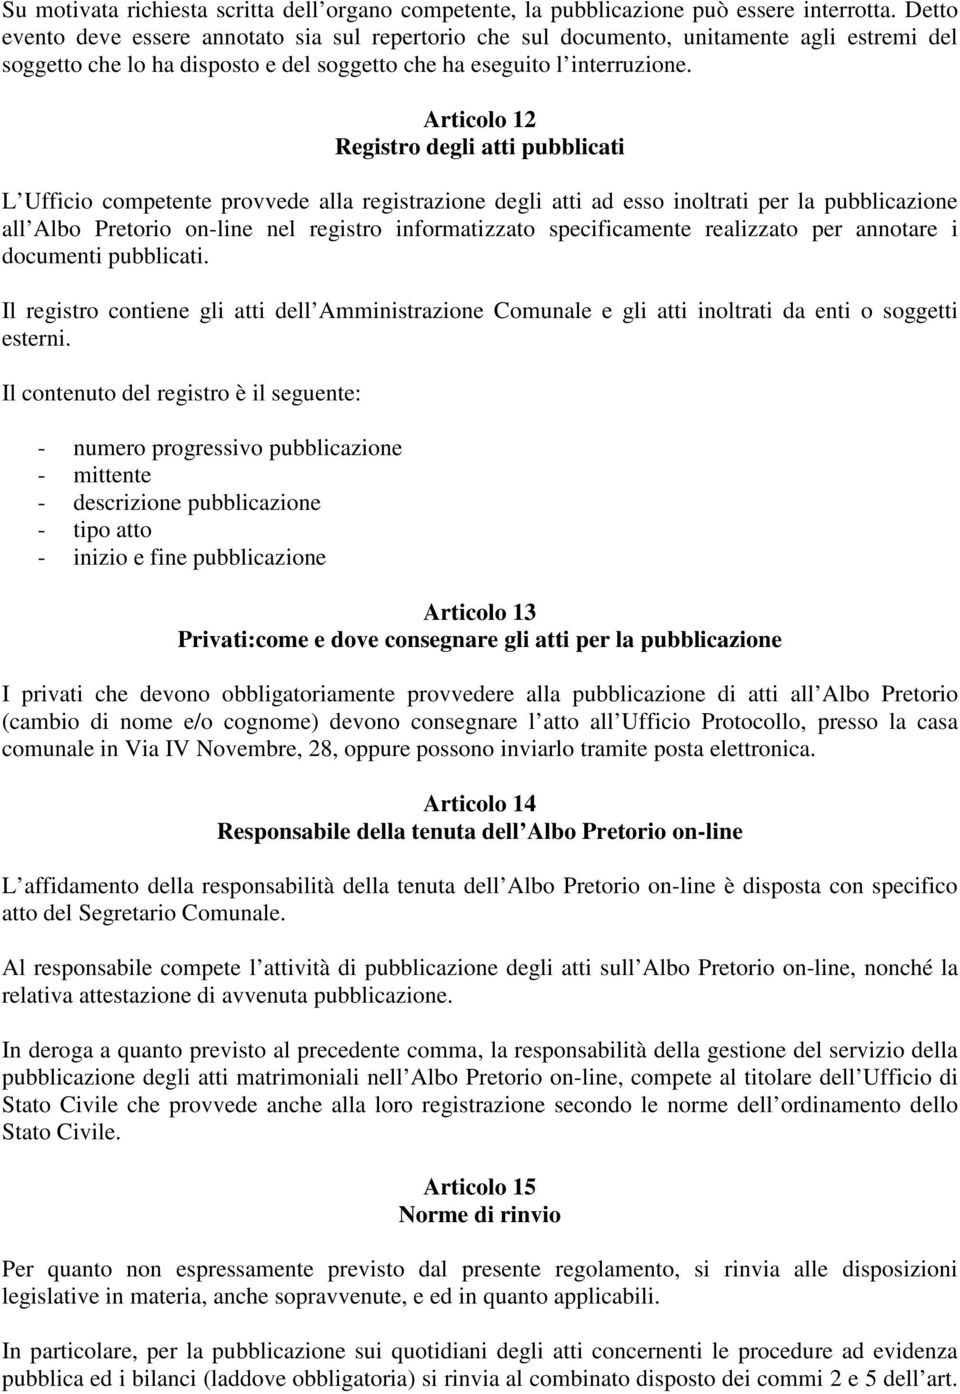 Articolo 12 Registro degli atti pubblicati L Ufficio competente provvede alla registrazione degli atti ad esso inoltrati per la pubblicazione all Albo Pretorio on-line nel registro informatizzato